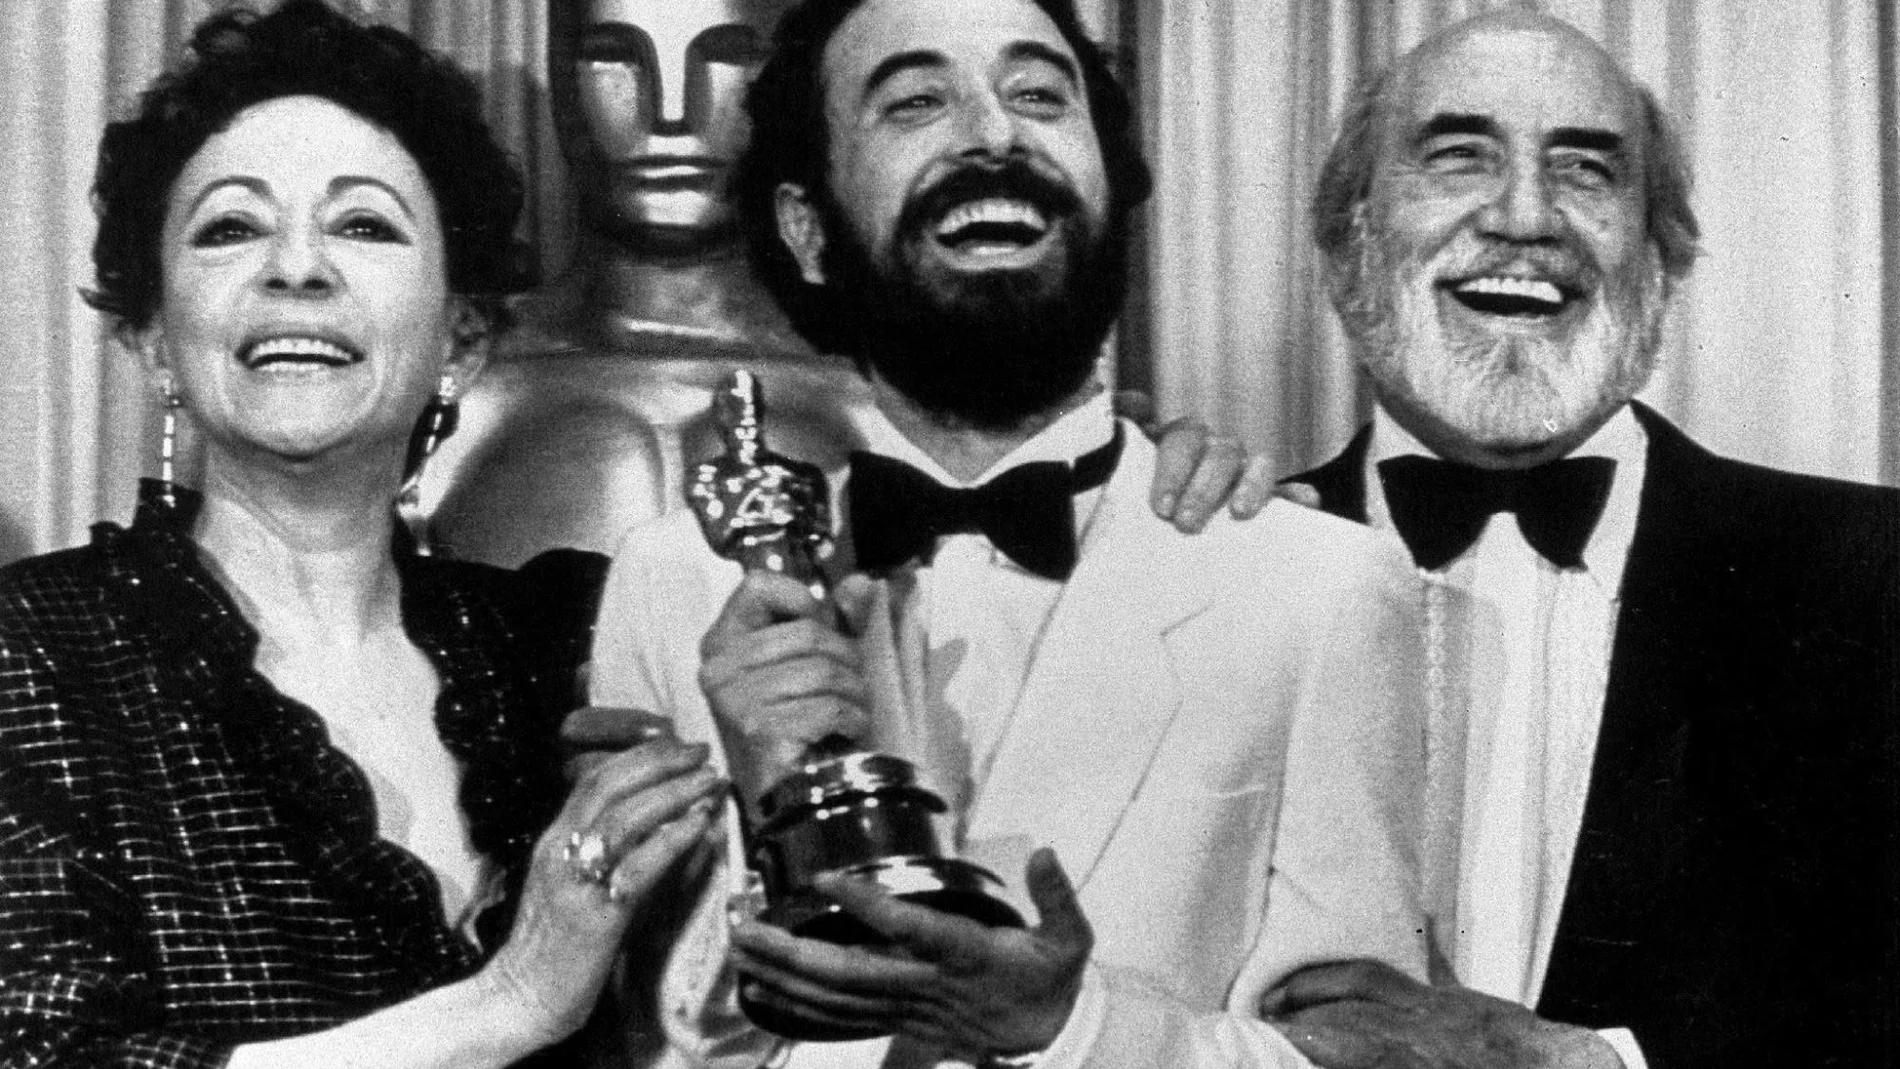 Encarna Paso recoge el Oscar por “Volver a empezar” junto a Jose Luis Garci y Antonio Ferrandis/ EFE